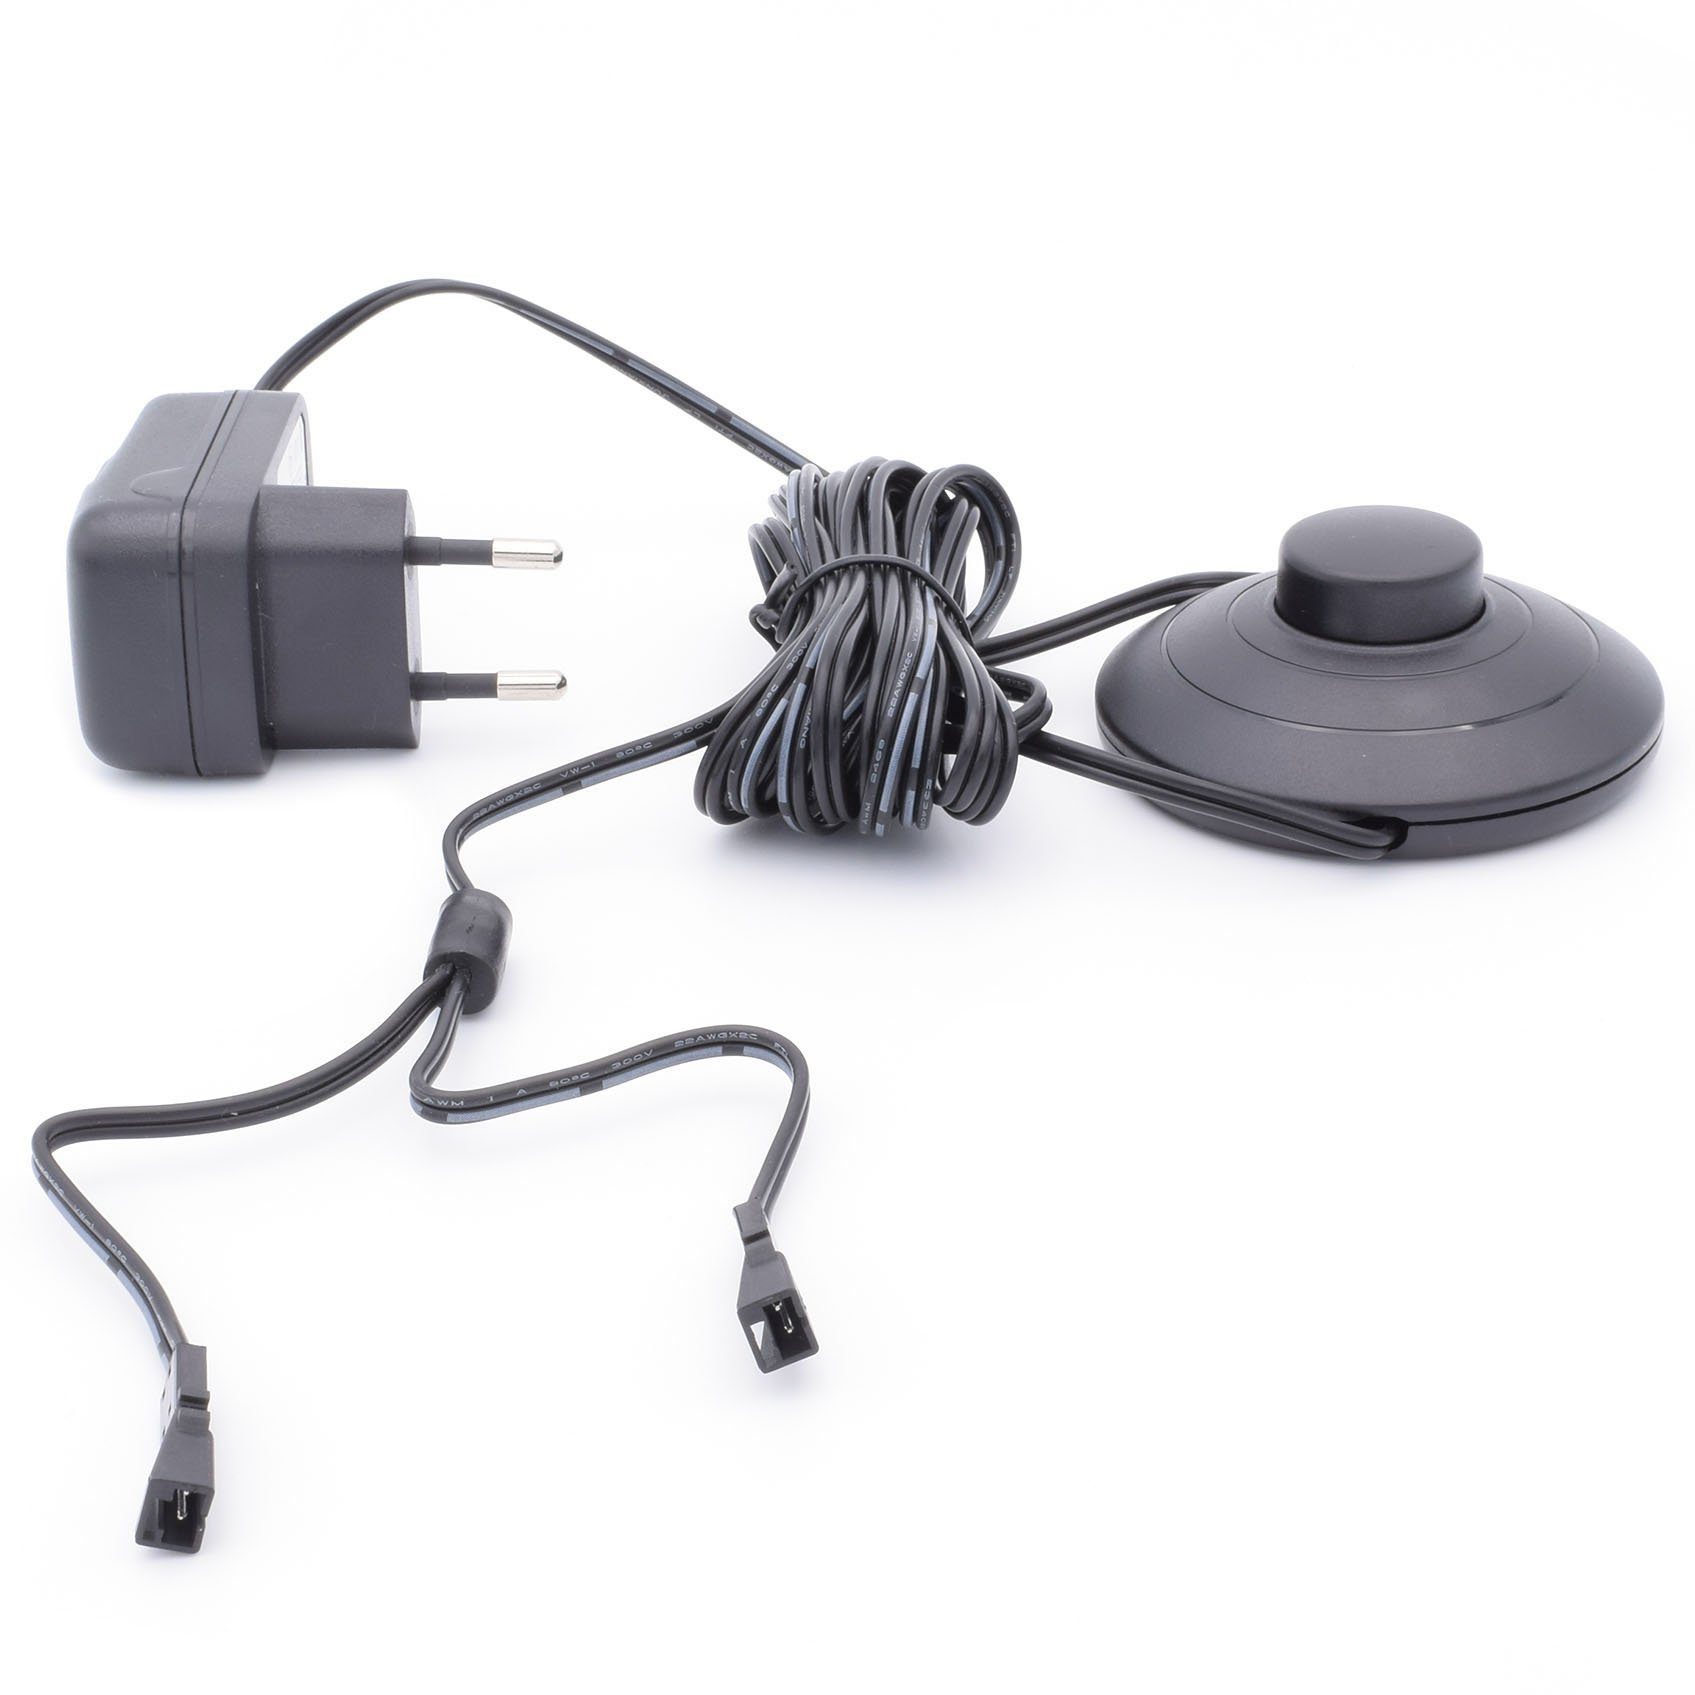 Yu Yang 6W Steckernetzteil mit Fußschalter LED Trafo (12V,6W,Trafo,SteckernetzteilmitFußschalter,2LEDKupplungen,Netzteil)